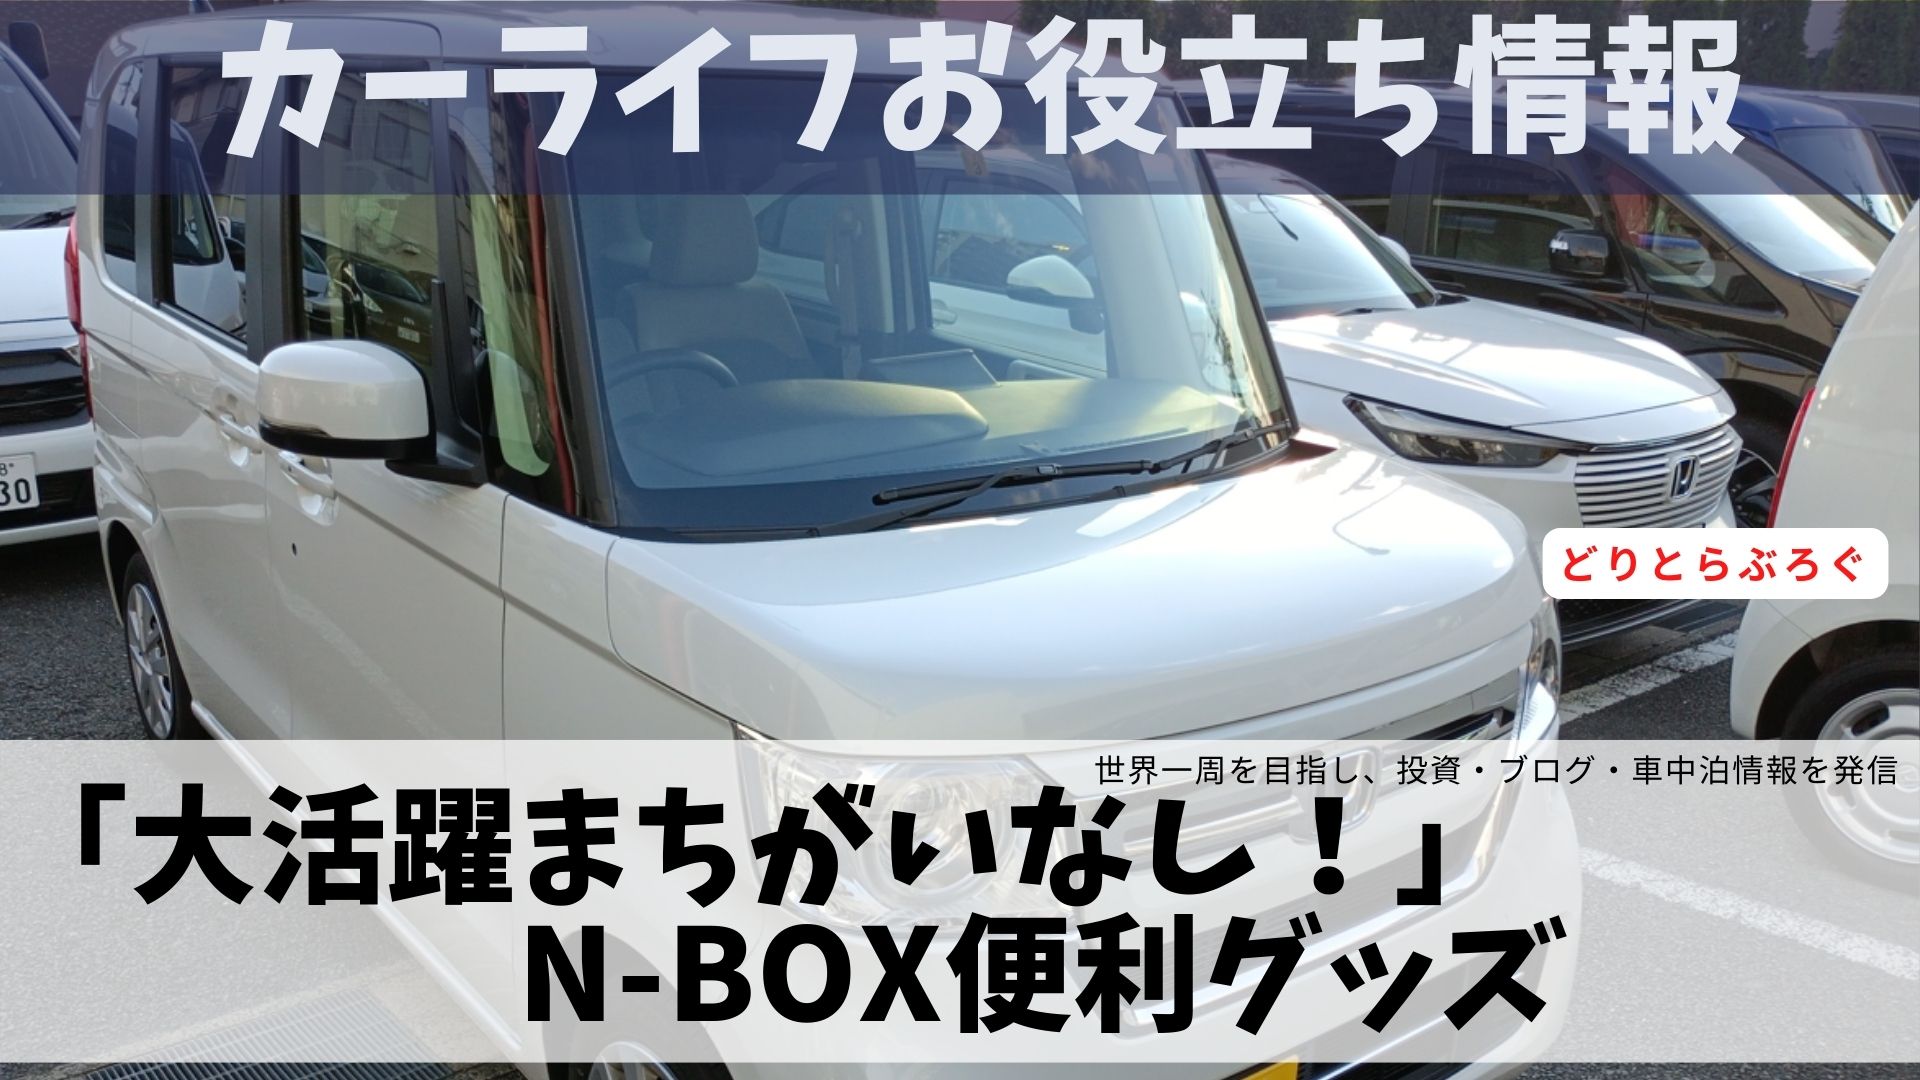 N-Box便利グッズ